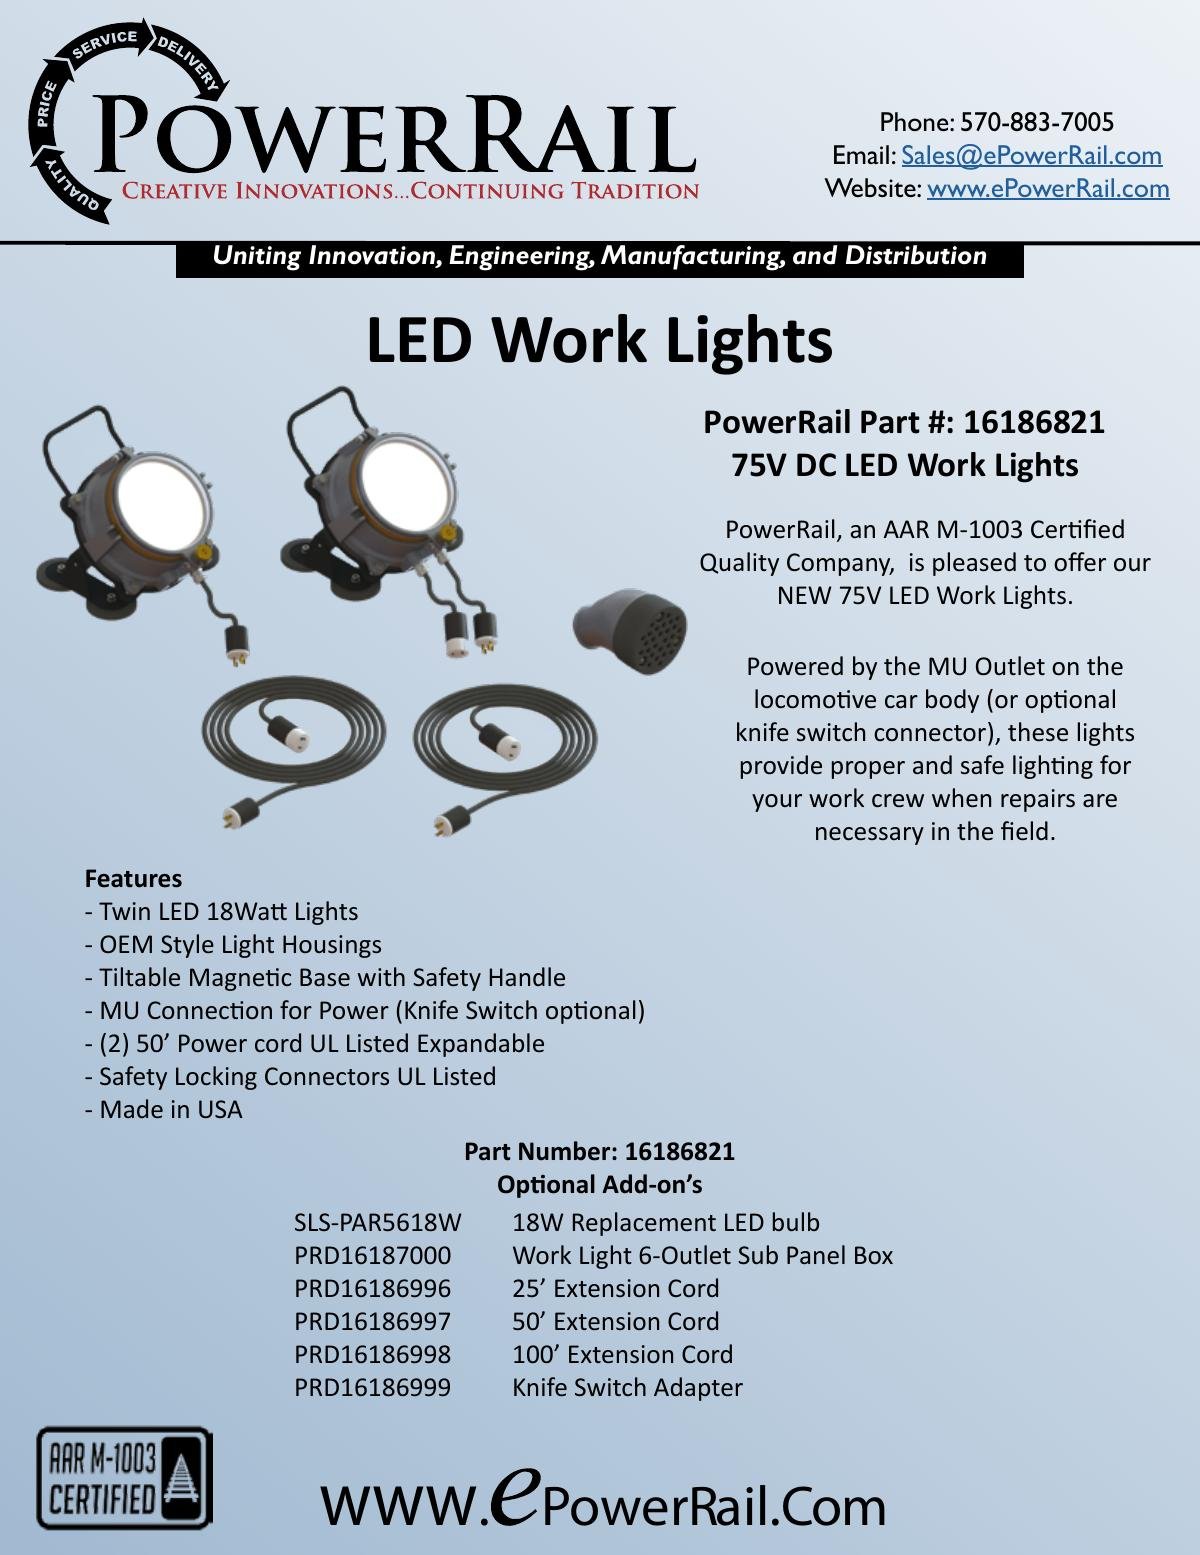 PowerRail LED Work Lights